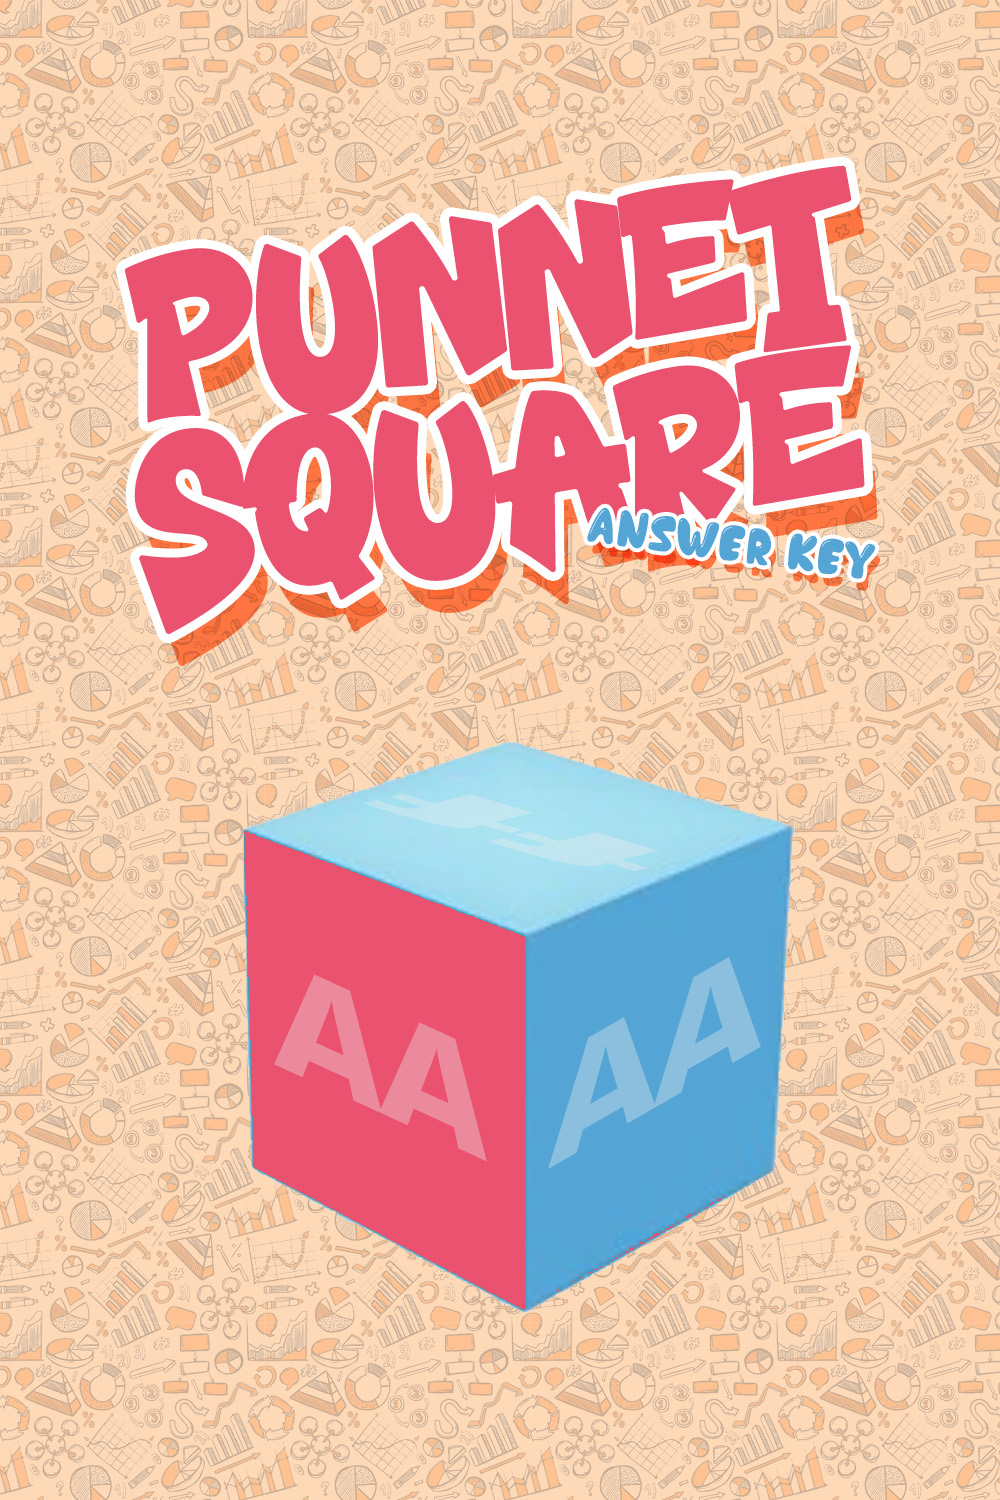 15 Images of Punnett Square Worksheet Answer Key